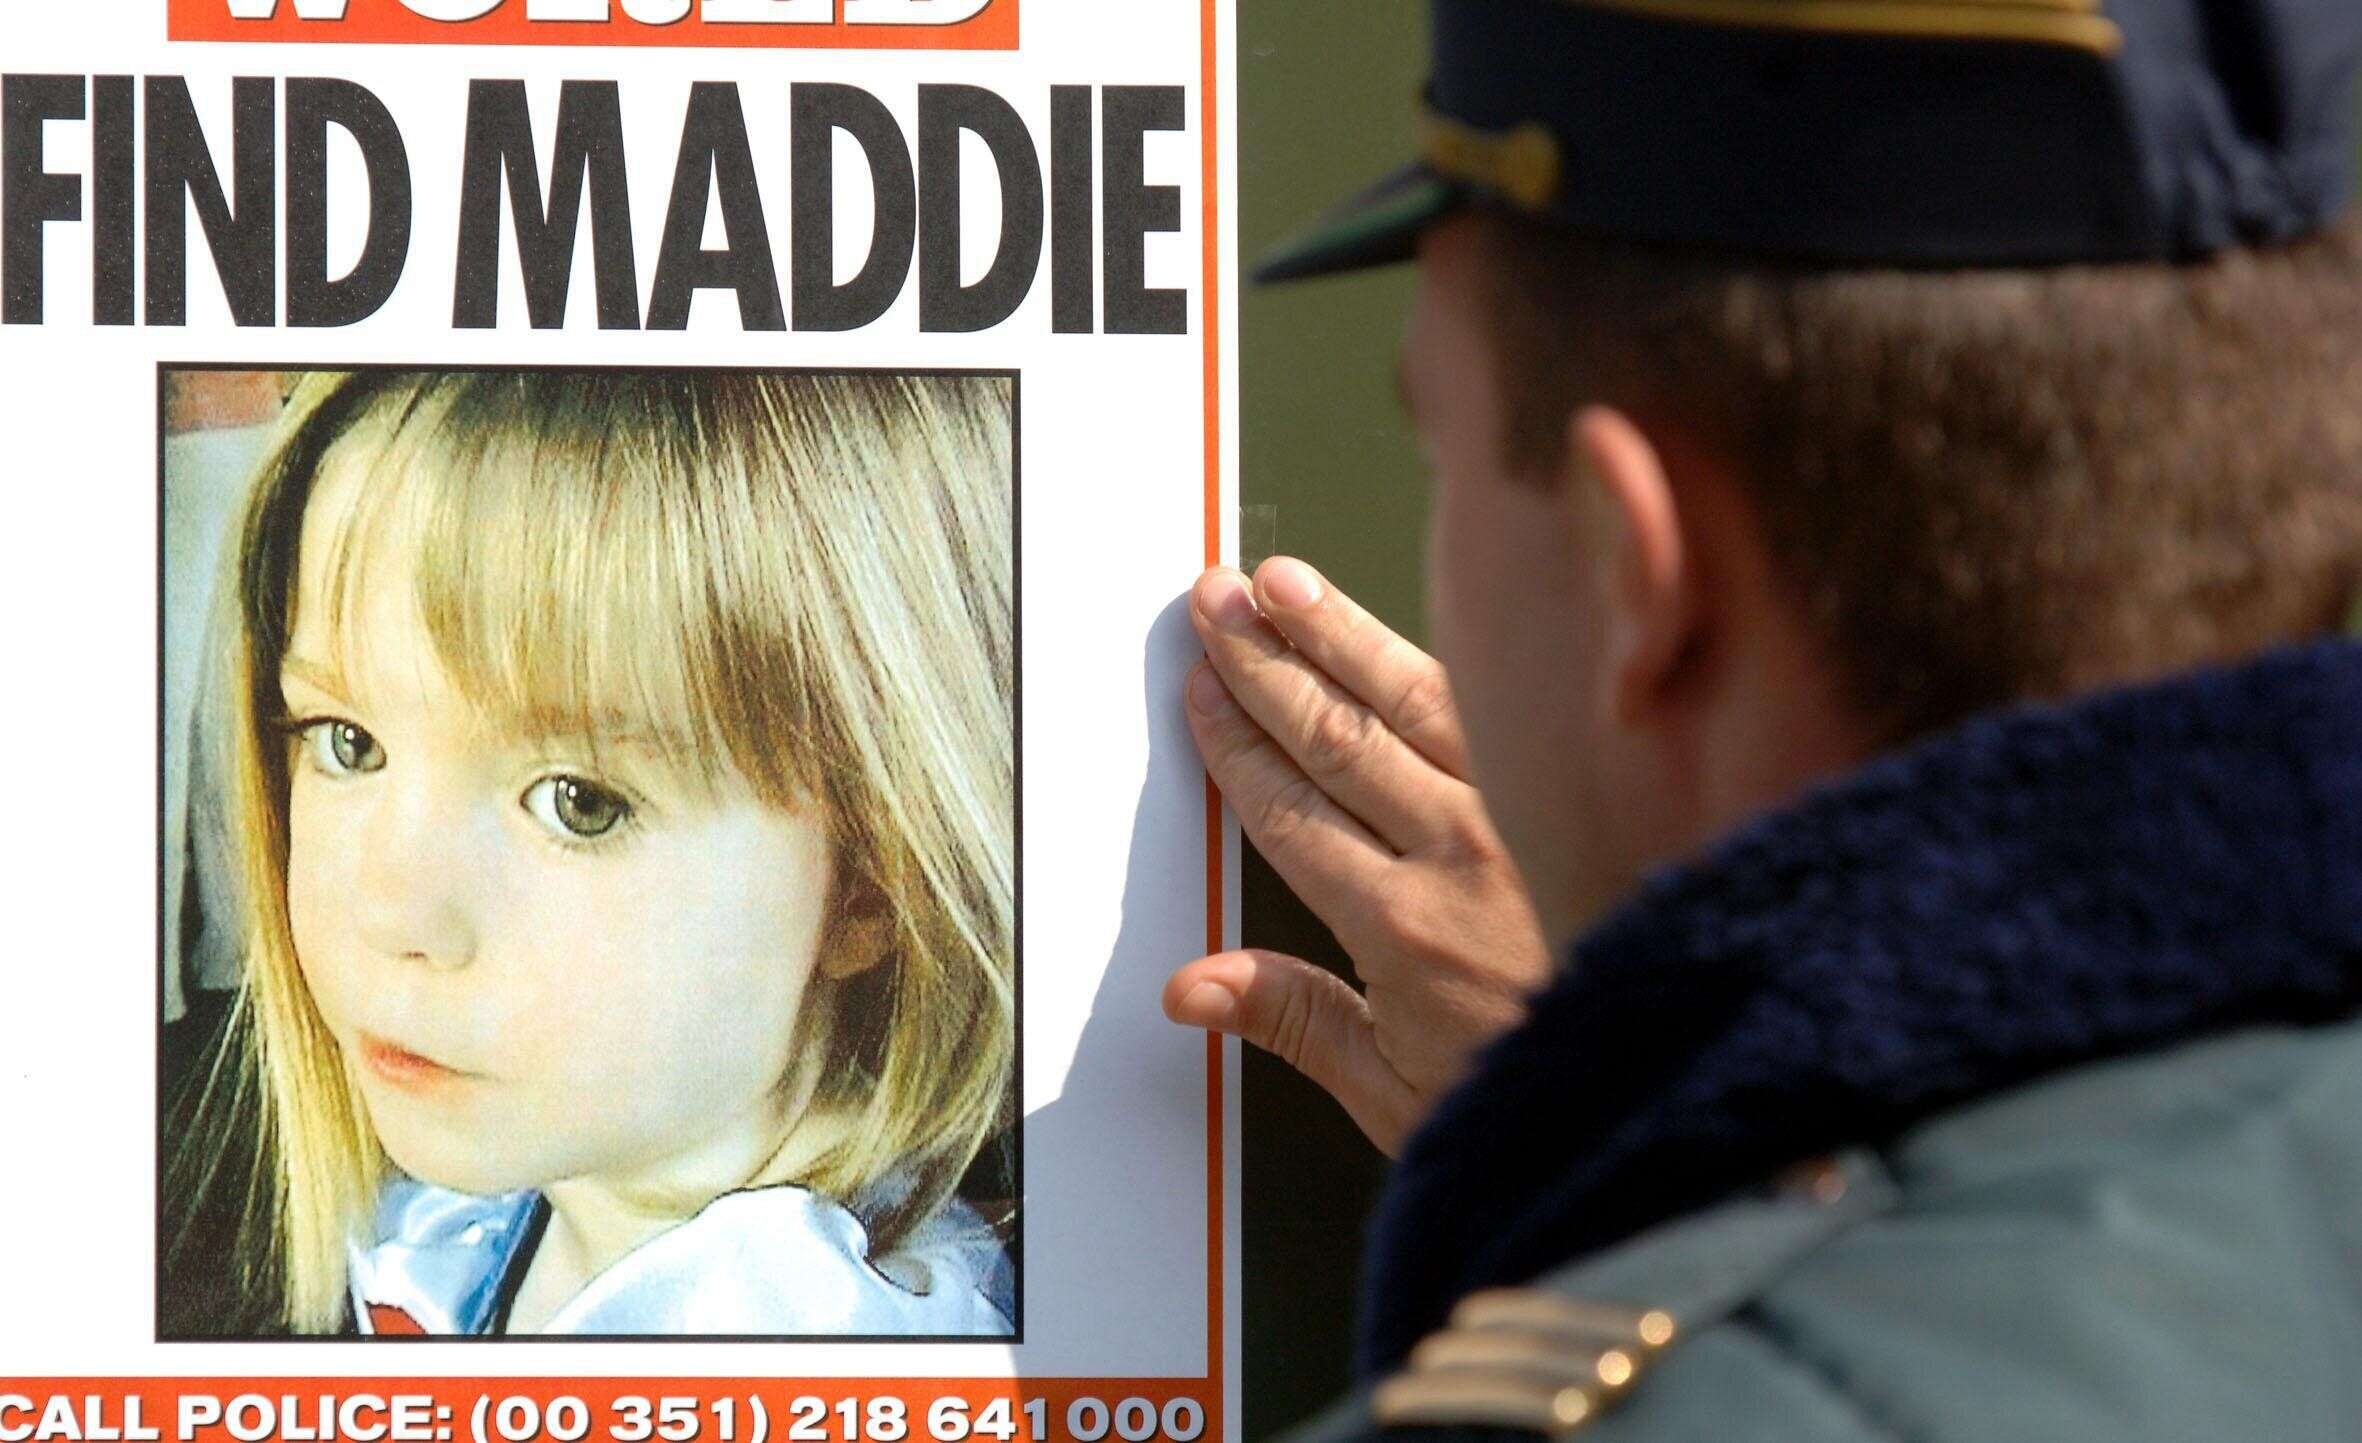 L'affaire de la disparition de la petite Maddie relancée avec un suspect allemand (Photo prise au Portugal en 2007 après la disparition de Madeleine McCann)